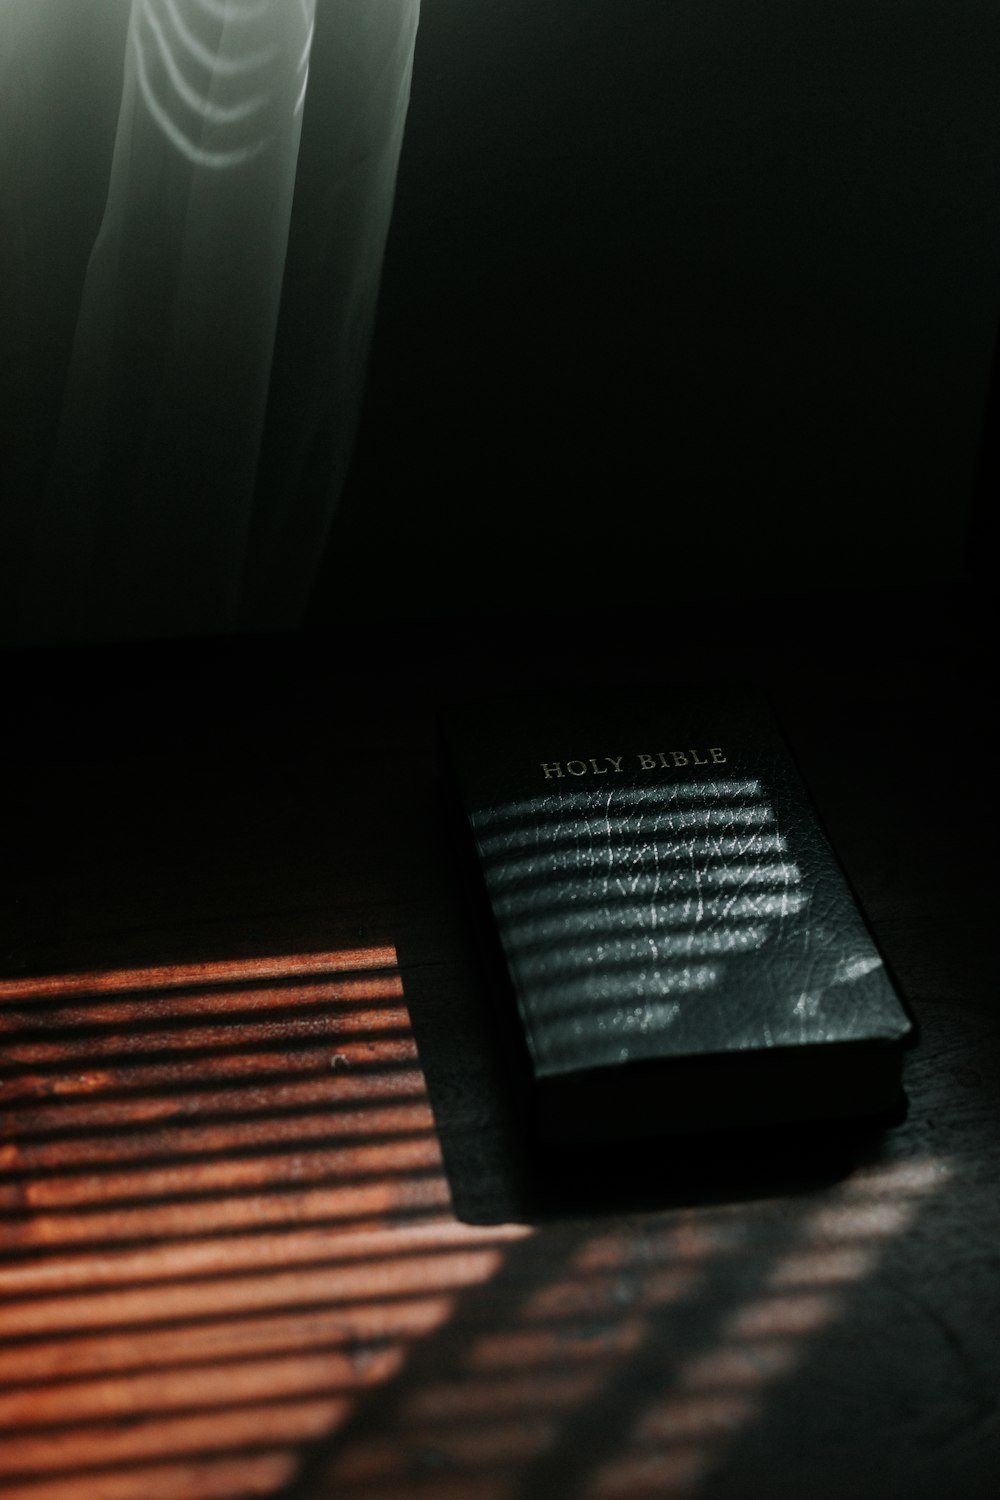 Schwarzes Buch auf braunem Holztisch